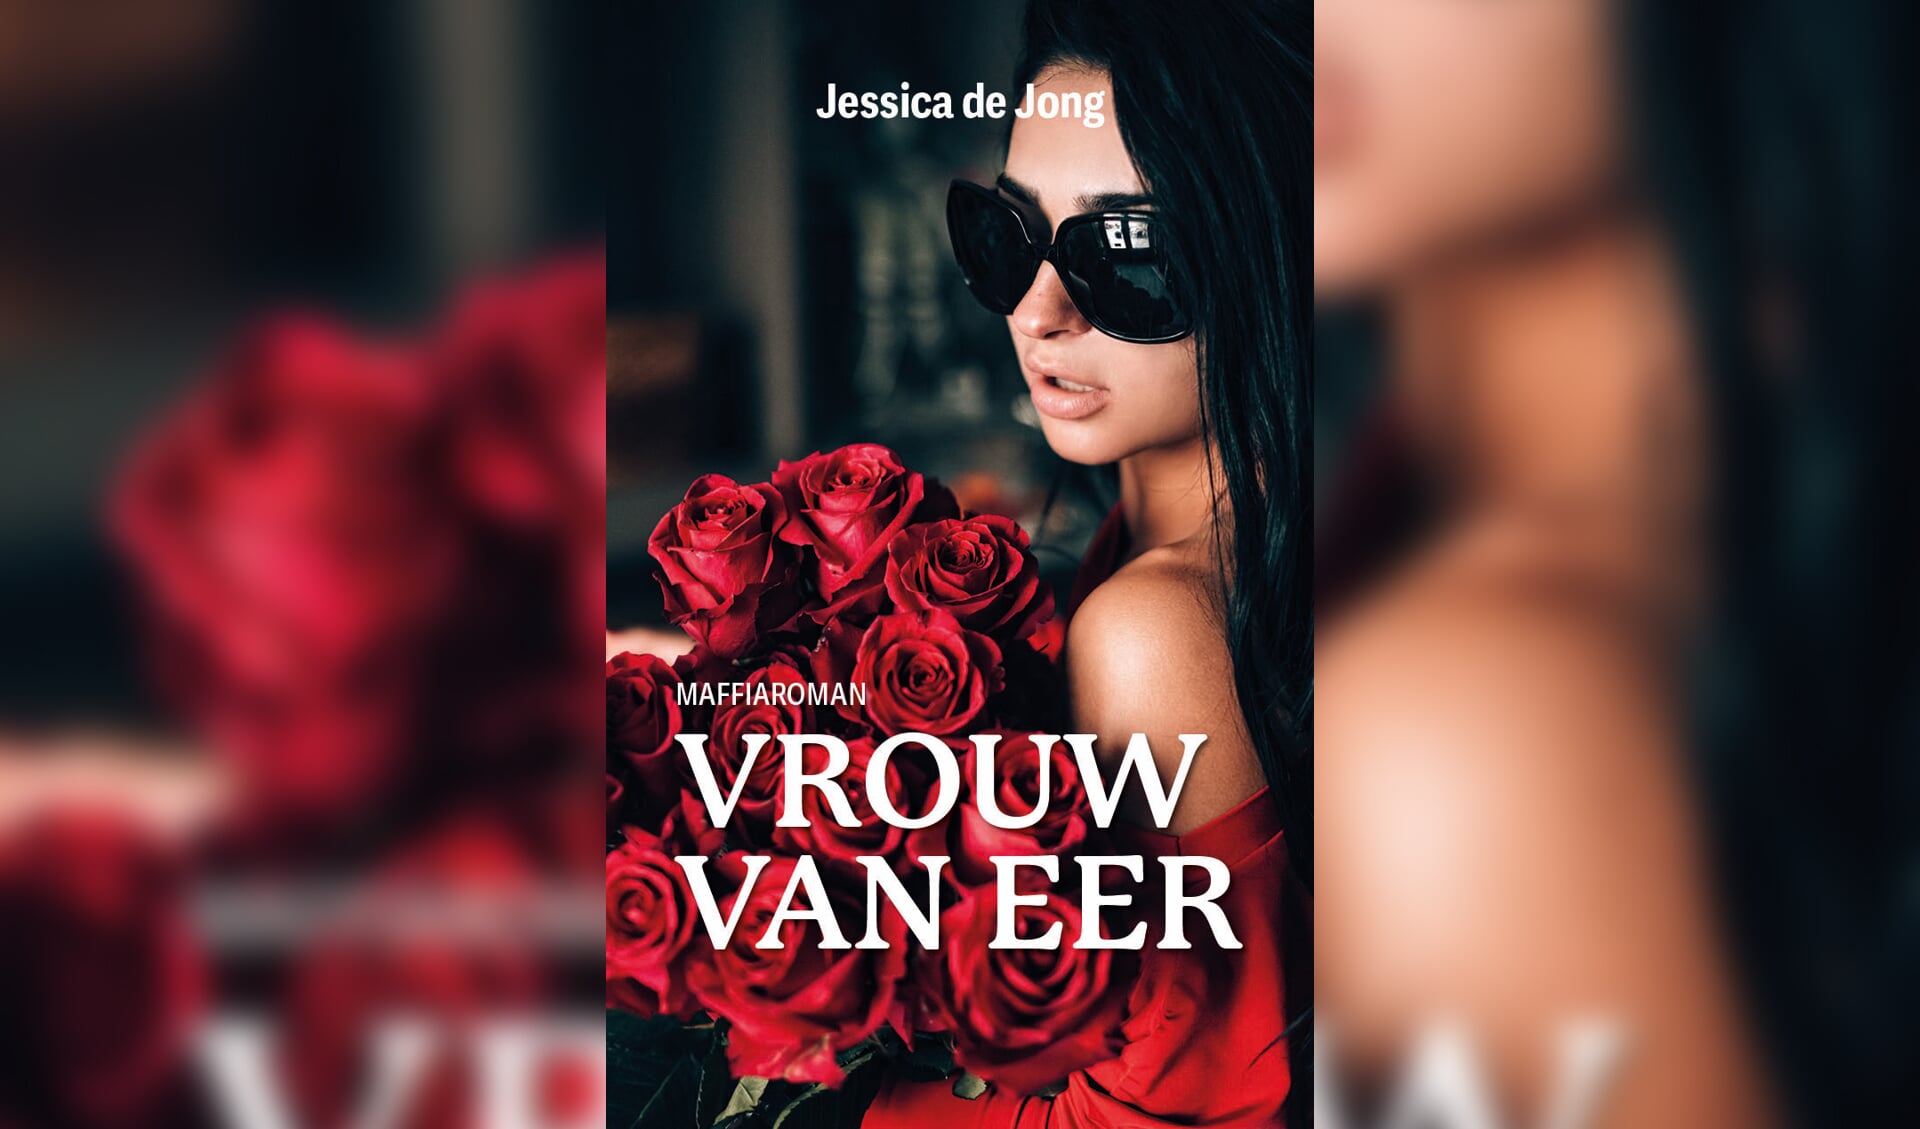 In de nieuwe maffiaroman 'Vrouw van eer' van Jessica de Jong speelt de gevangenis in Westzaan een prominente rol. 